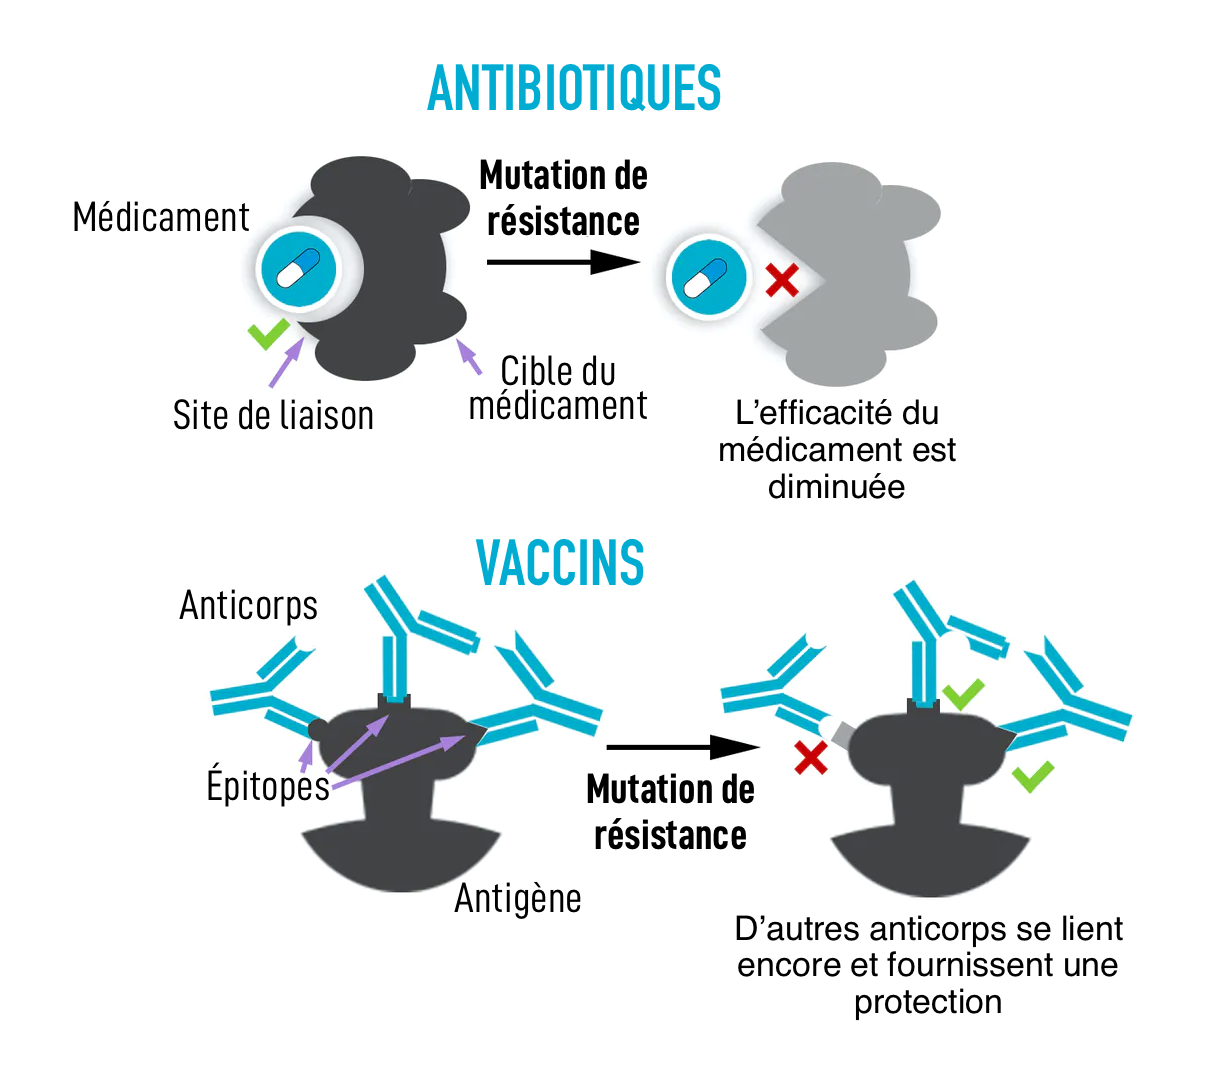 Pourquoi la résistance est courante pour les antibiotiques, mais rare pour les vaccins